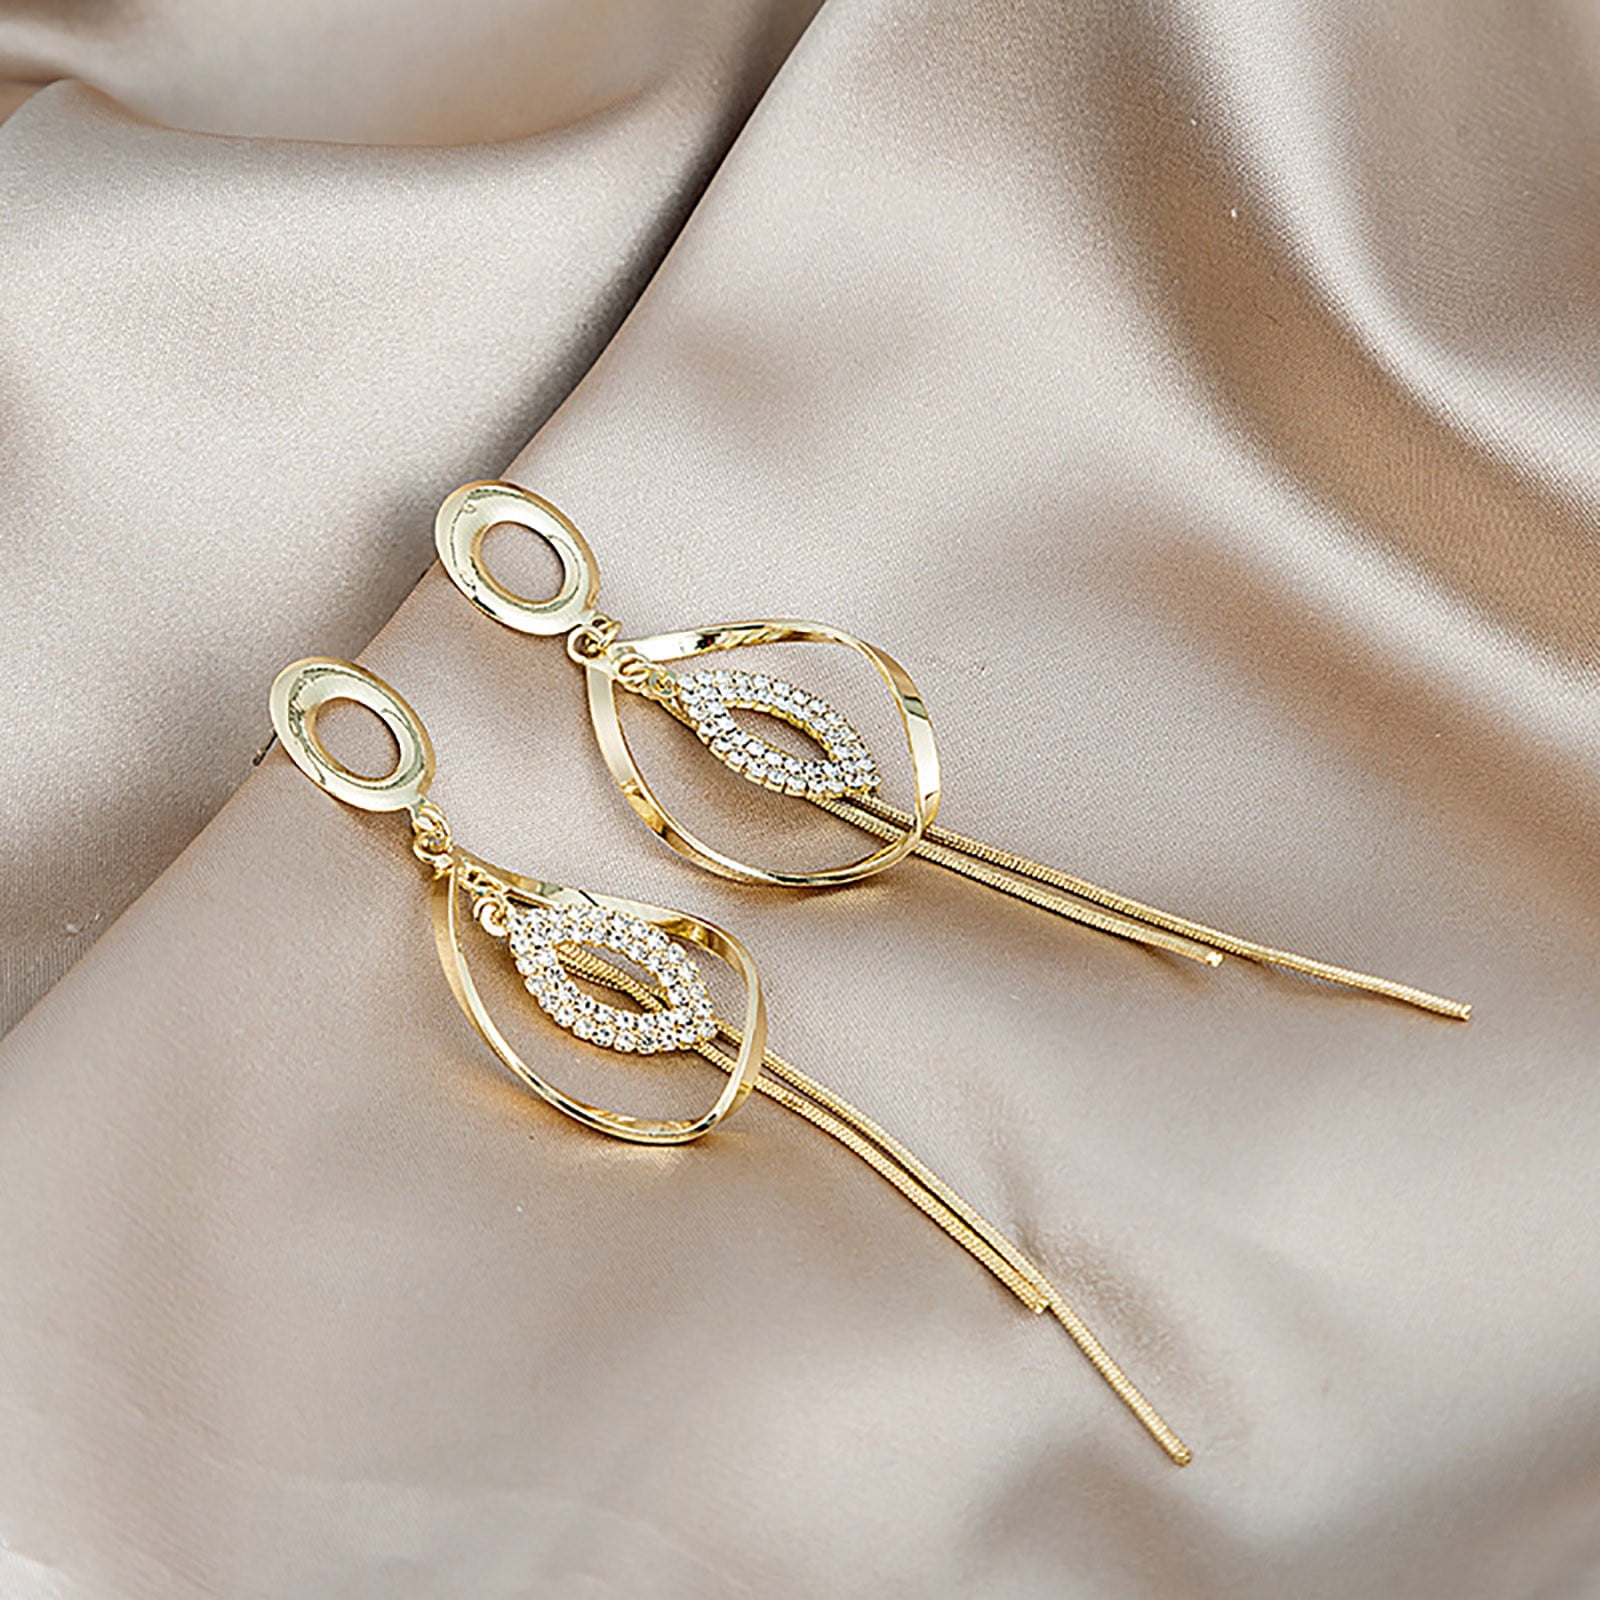 Simple Gold Earrings Designs 2023 | छोटी ईयररिंग की लेटेस्ट डिजाइन